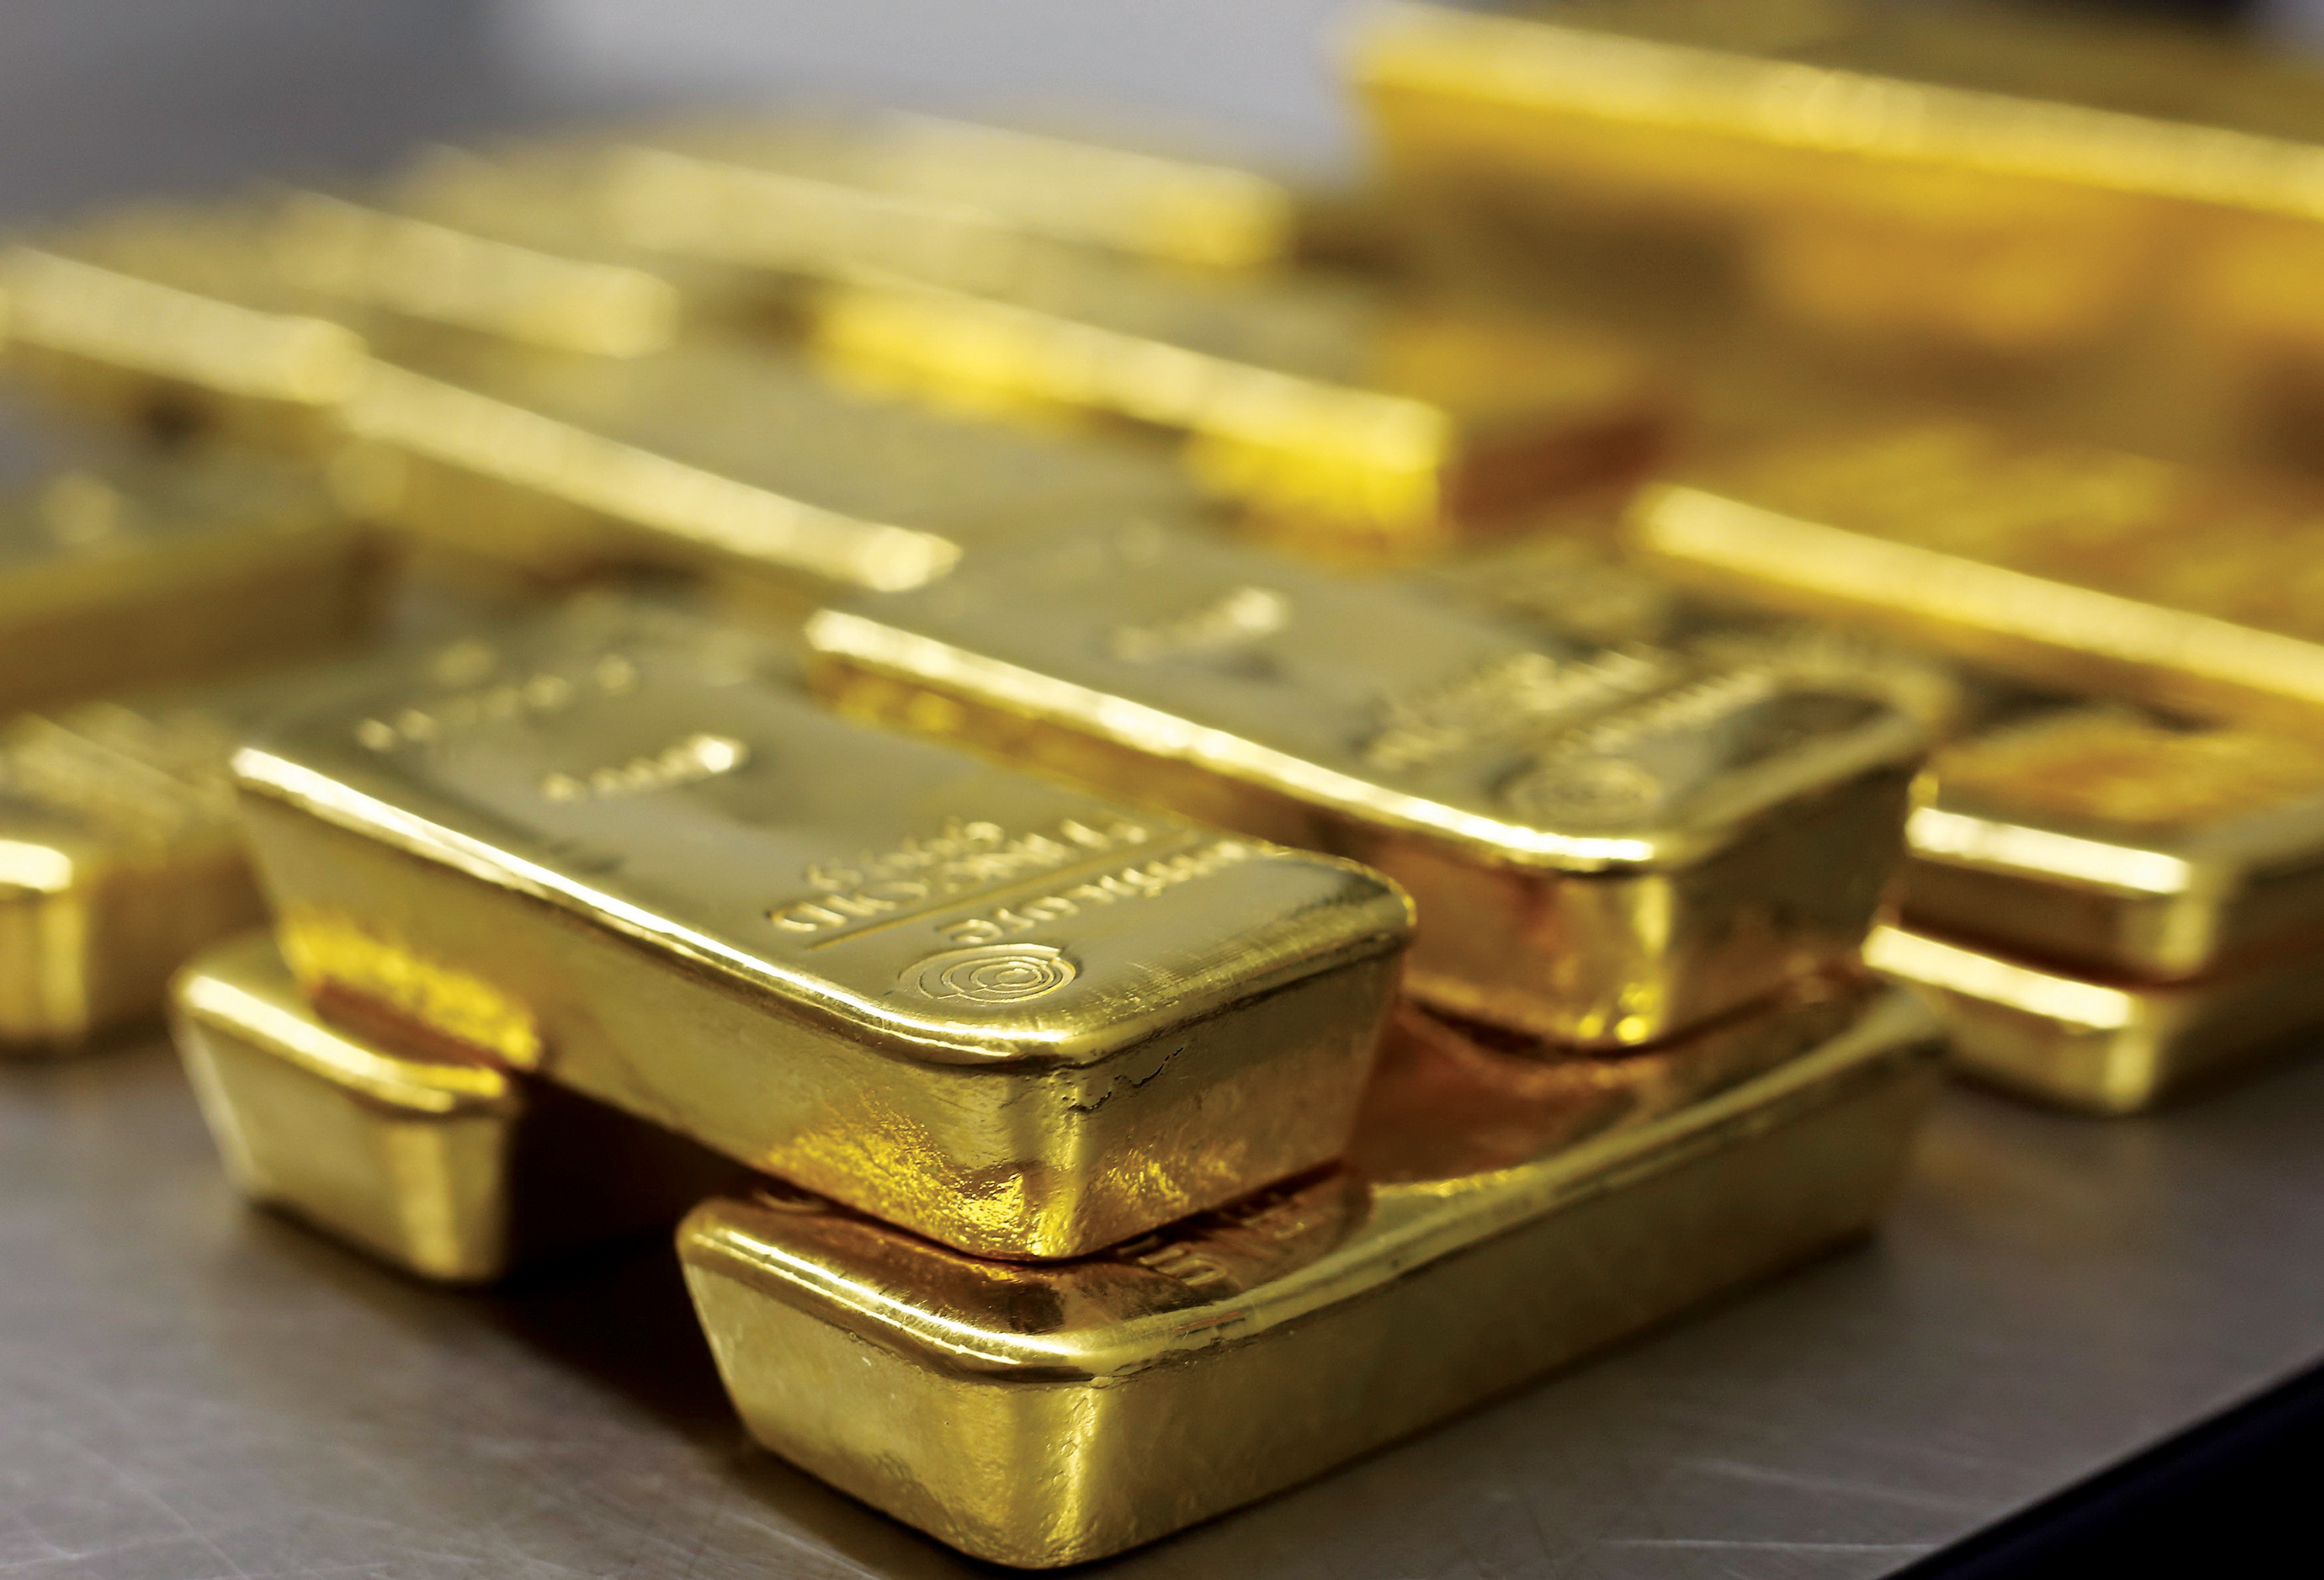 الذهب يرتفع وسط ترقب بيانات التضخم الأمريكية